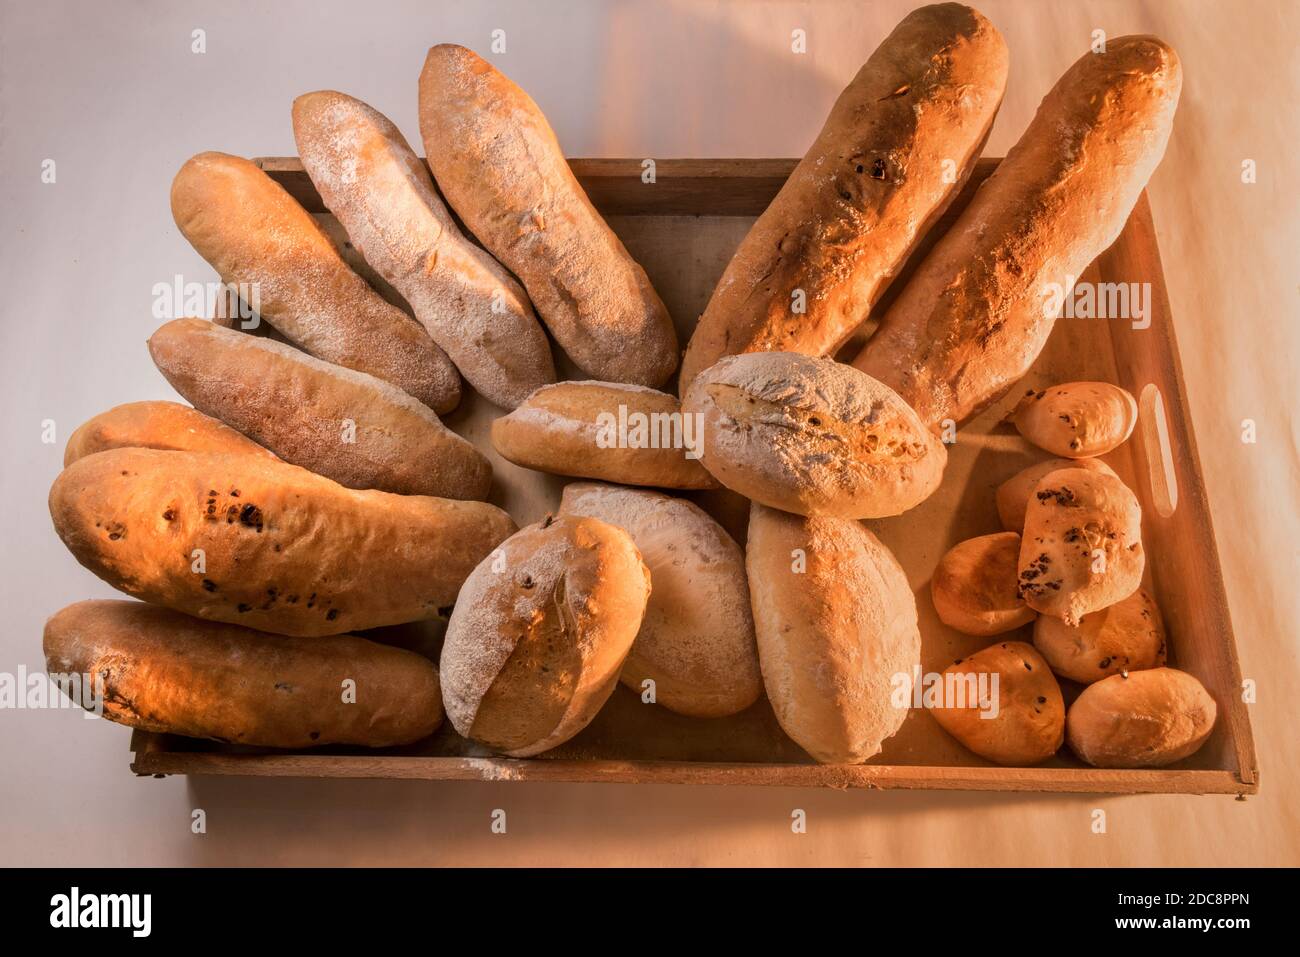 Pane italiano, diversi tipi di pane delle regioni italiane Foto Stock